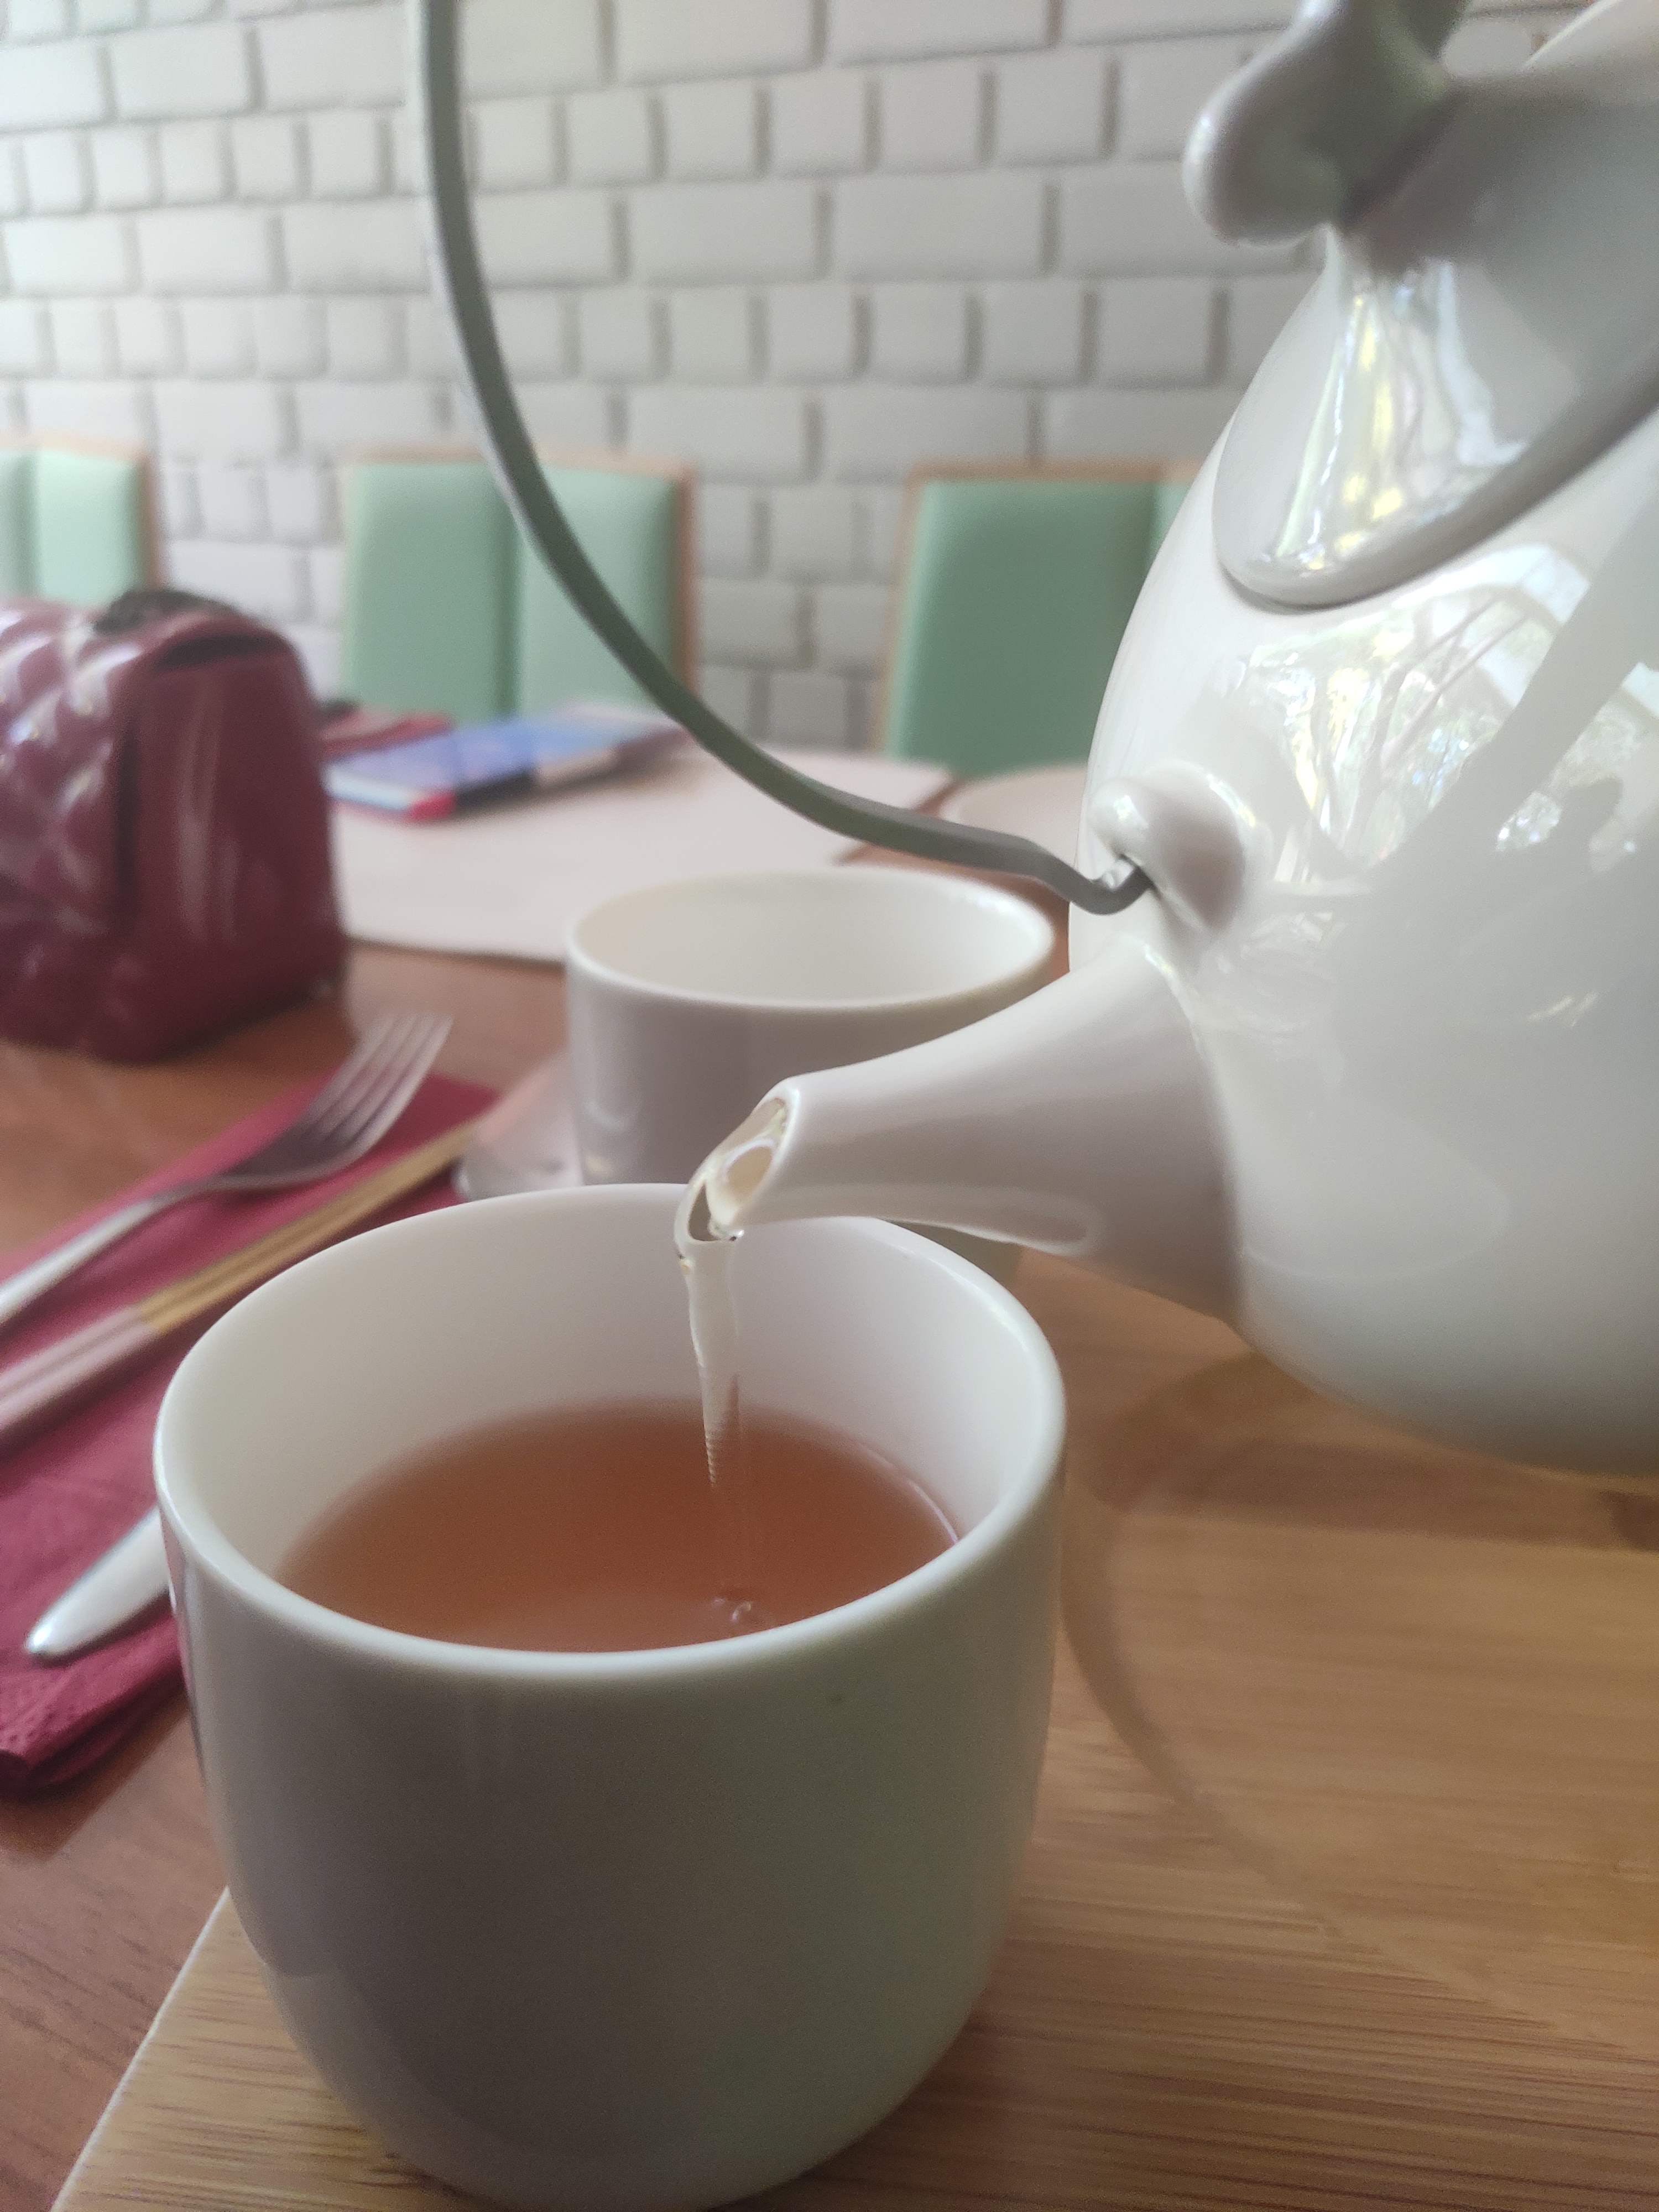 Teapot,Drink,Tea,Cup,Tableware,Serveware,Food,Cup,Earl grey tea,Dairy